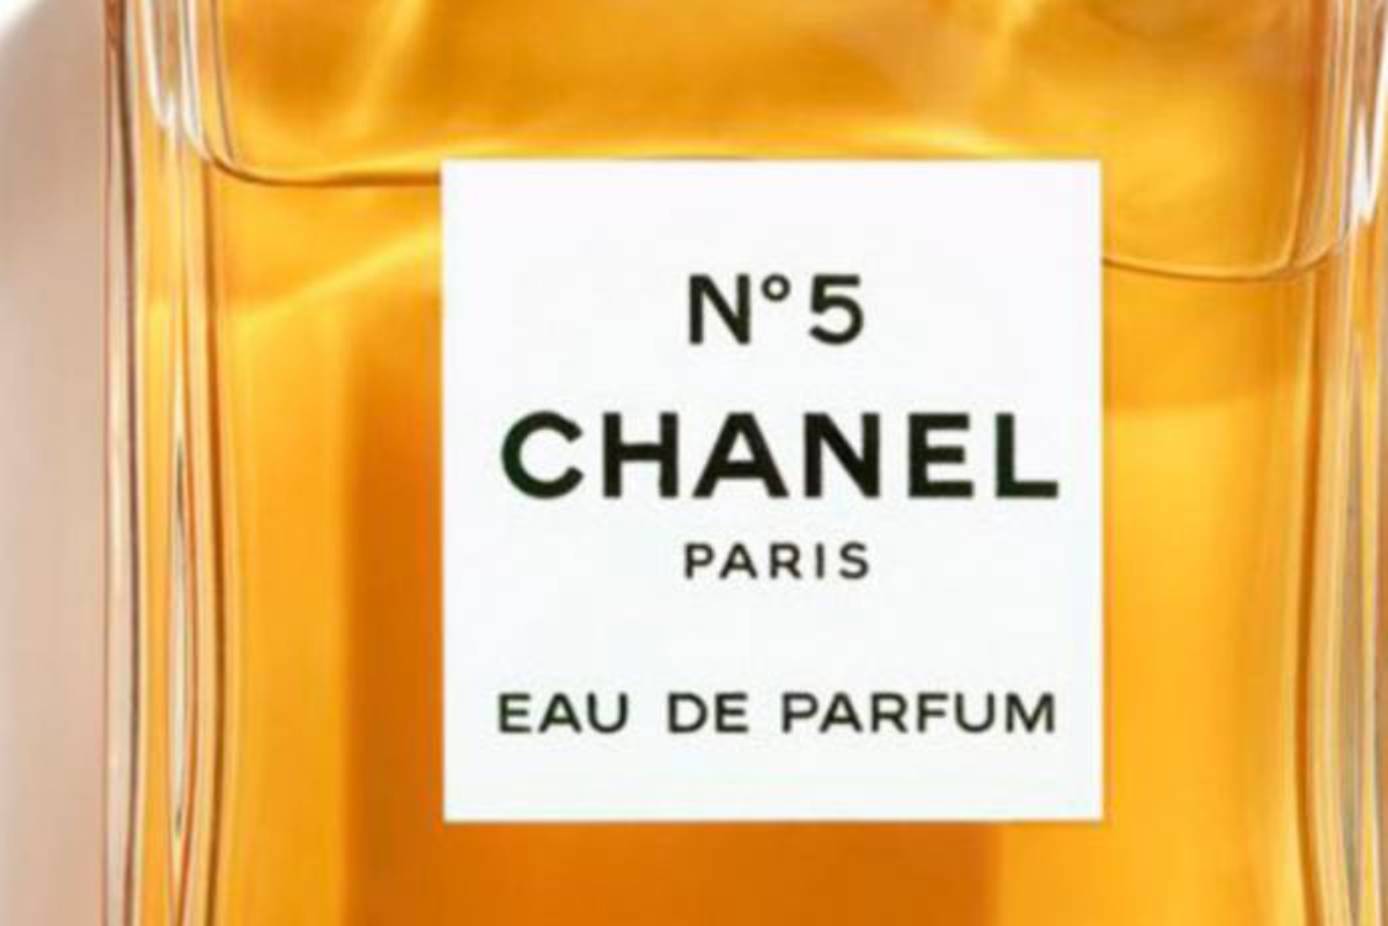 Chanel's $825 Advent Calendar Sparks Controversy On TikTok